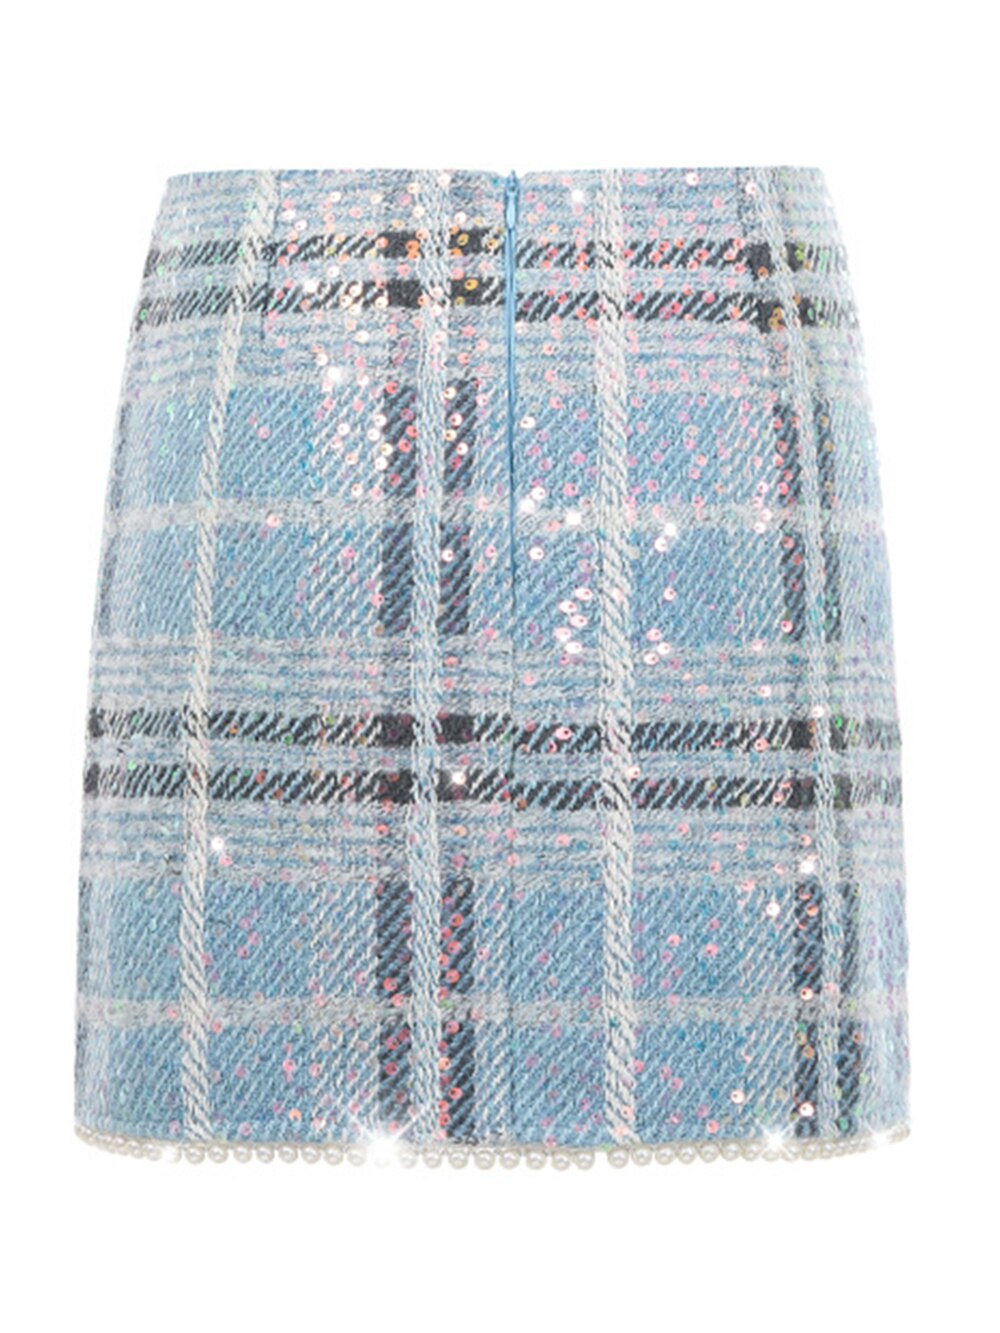 Sequined Pearl Plaid Tweed Single-Breasted Blazer & High Waist Mini Skirt Set